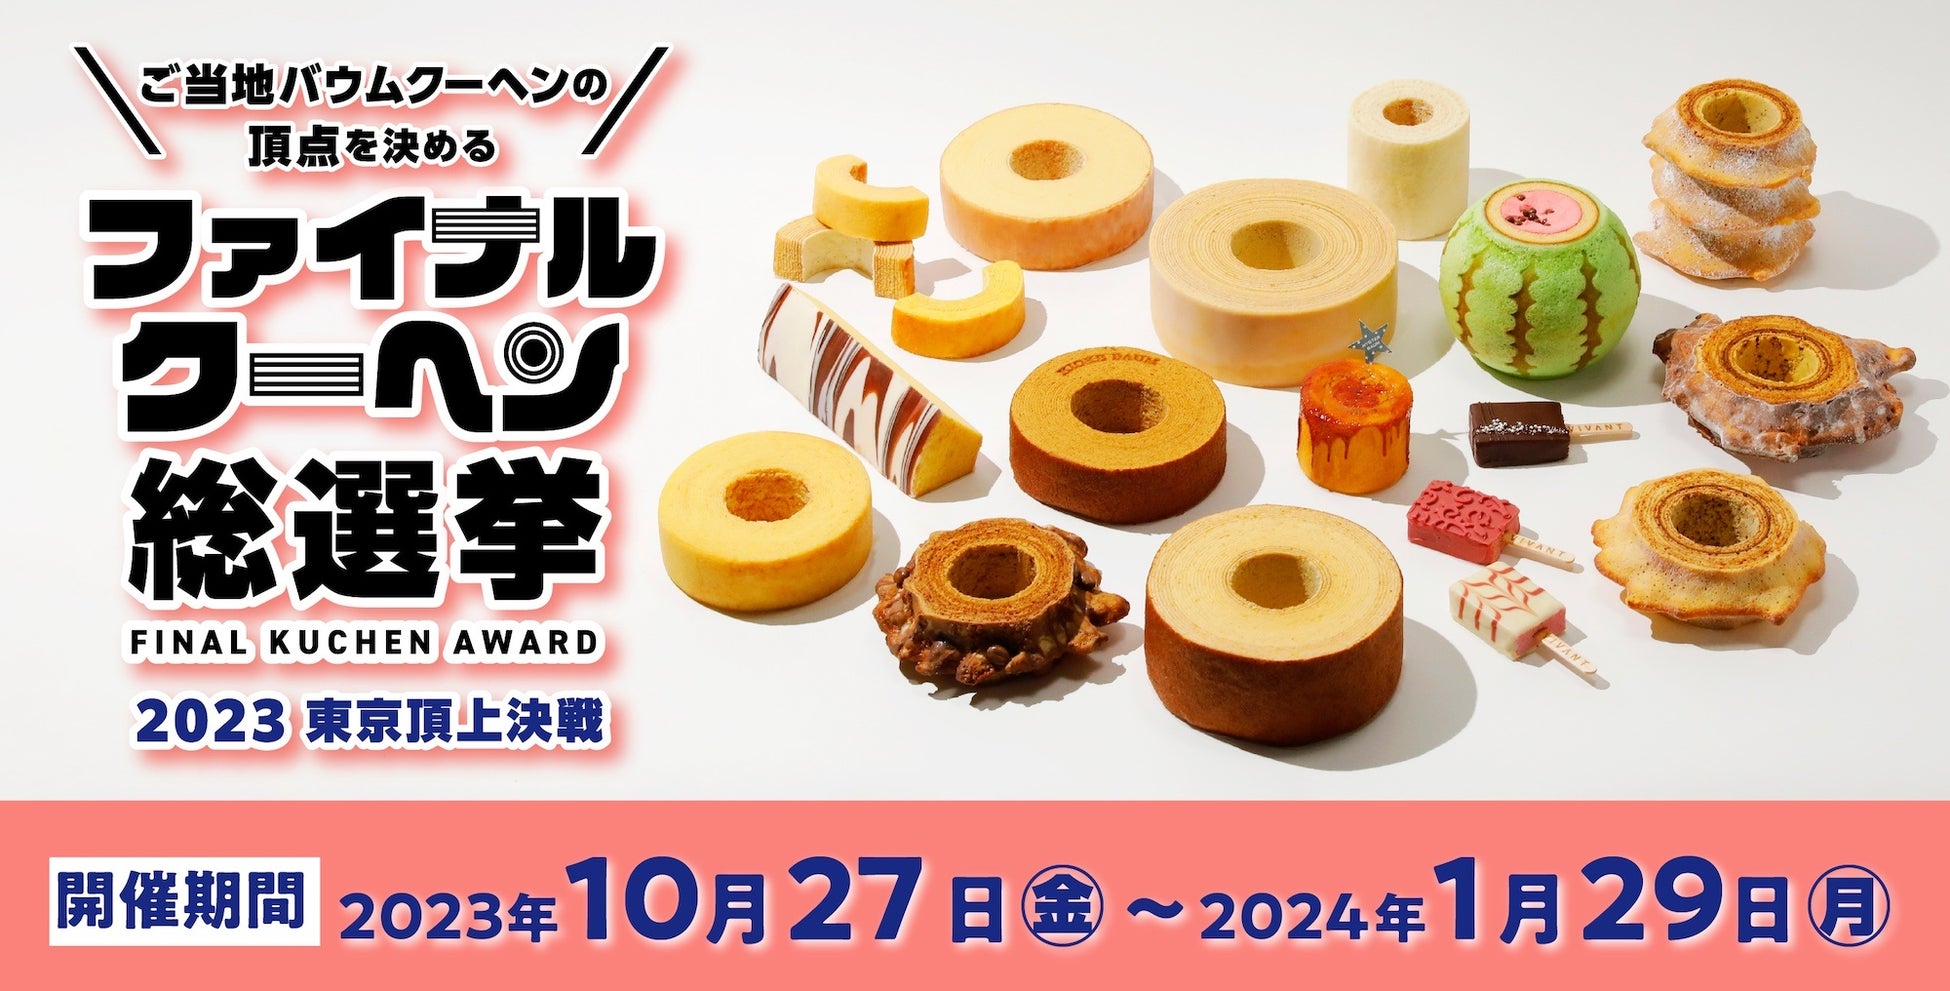 産地直送通販サイト「ＪＡタウン」で、１０月１９日から岐阜県のお米「ハツシモ」の新米キャンペーン実施中！